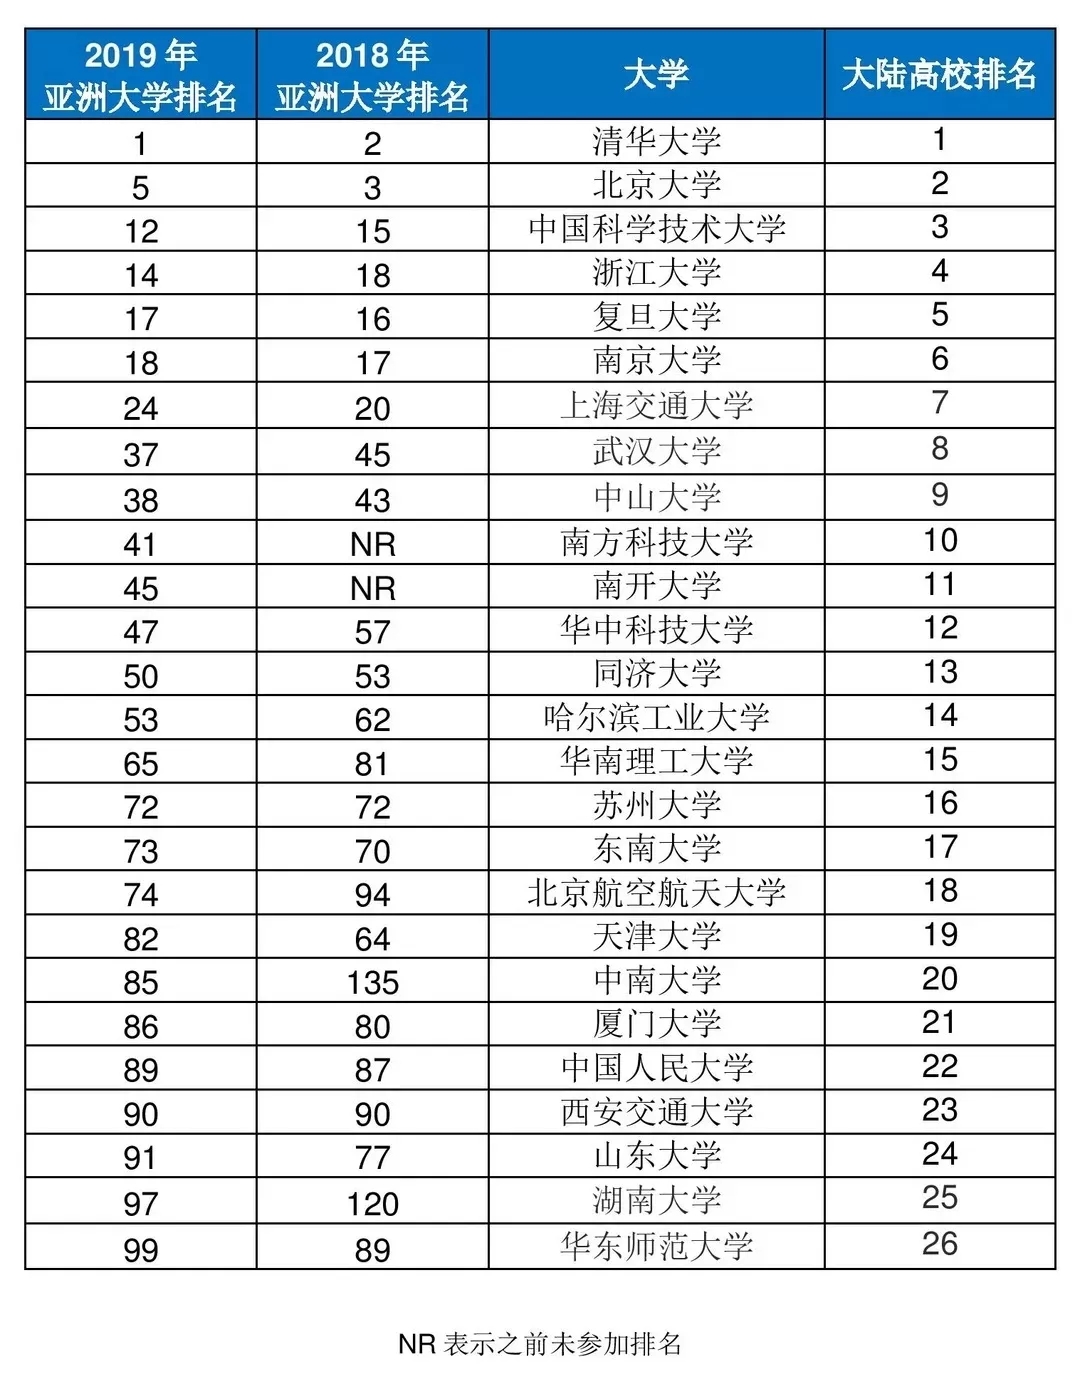 2019中国高校排行榜_2019中国大学排行榜公布 浙大排名超越北大